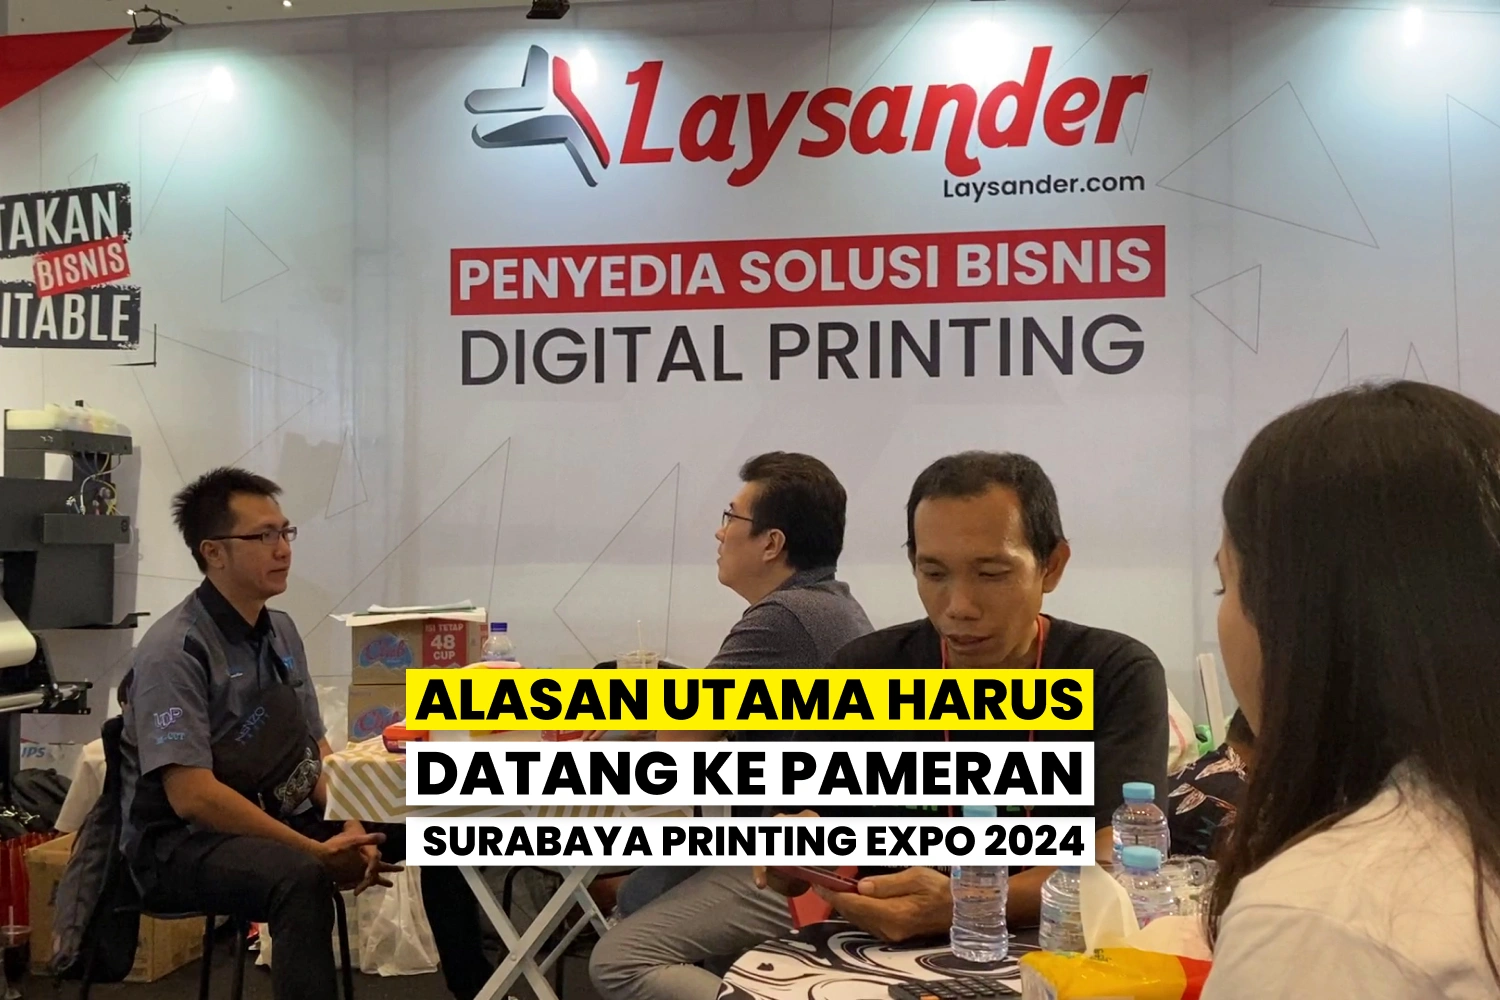 Pengunjung Berinteraksi Di Stan Pameran Digital Printing Surabaya Printing Expo 2024.